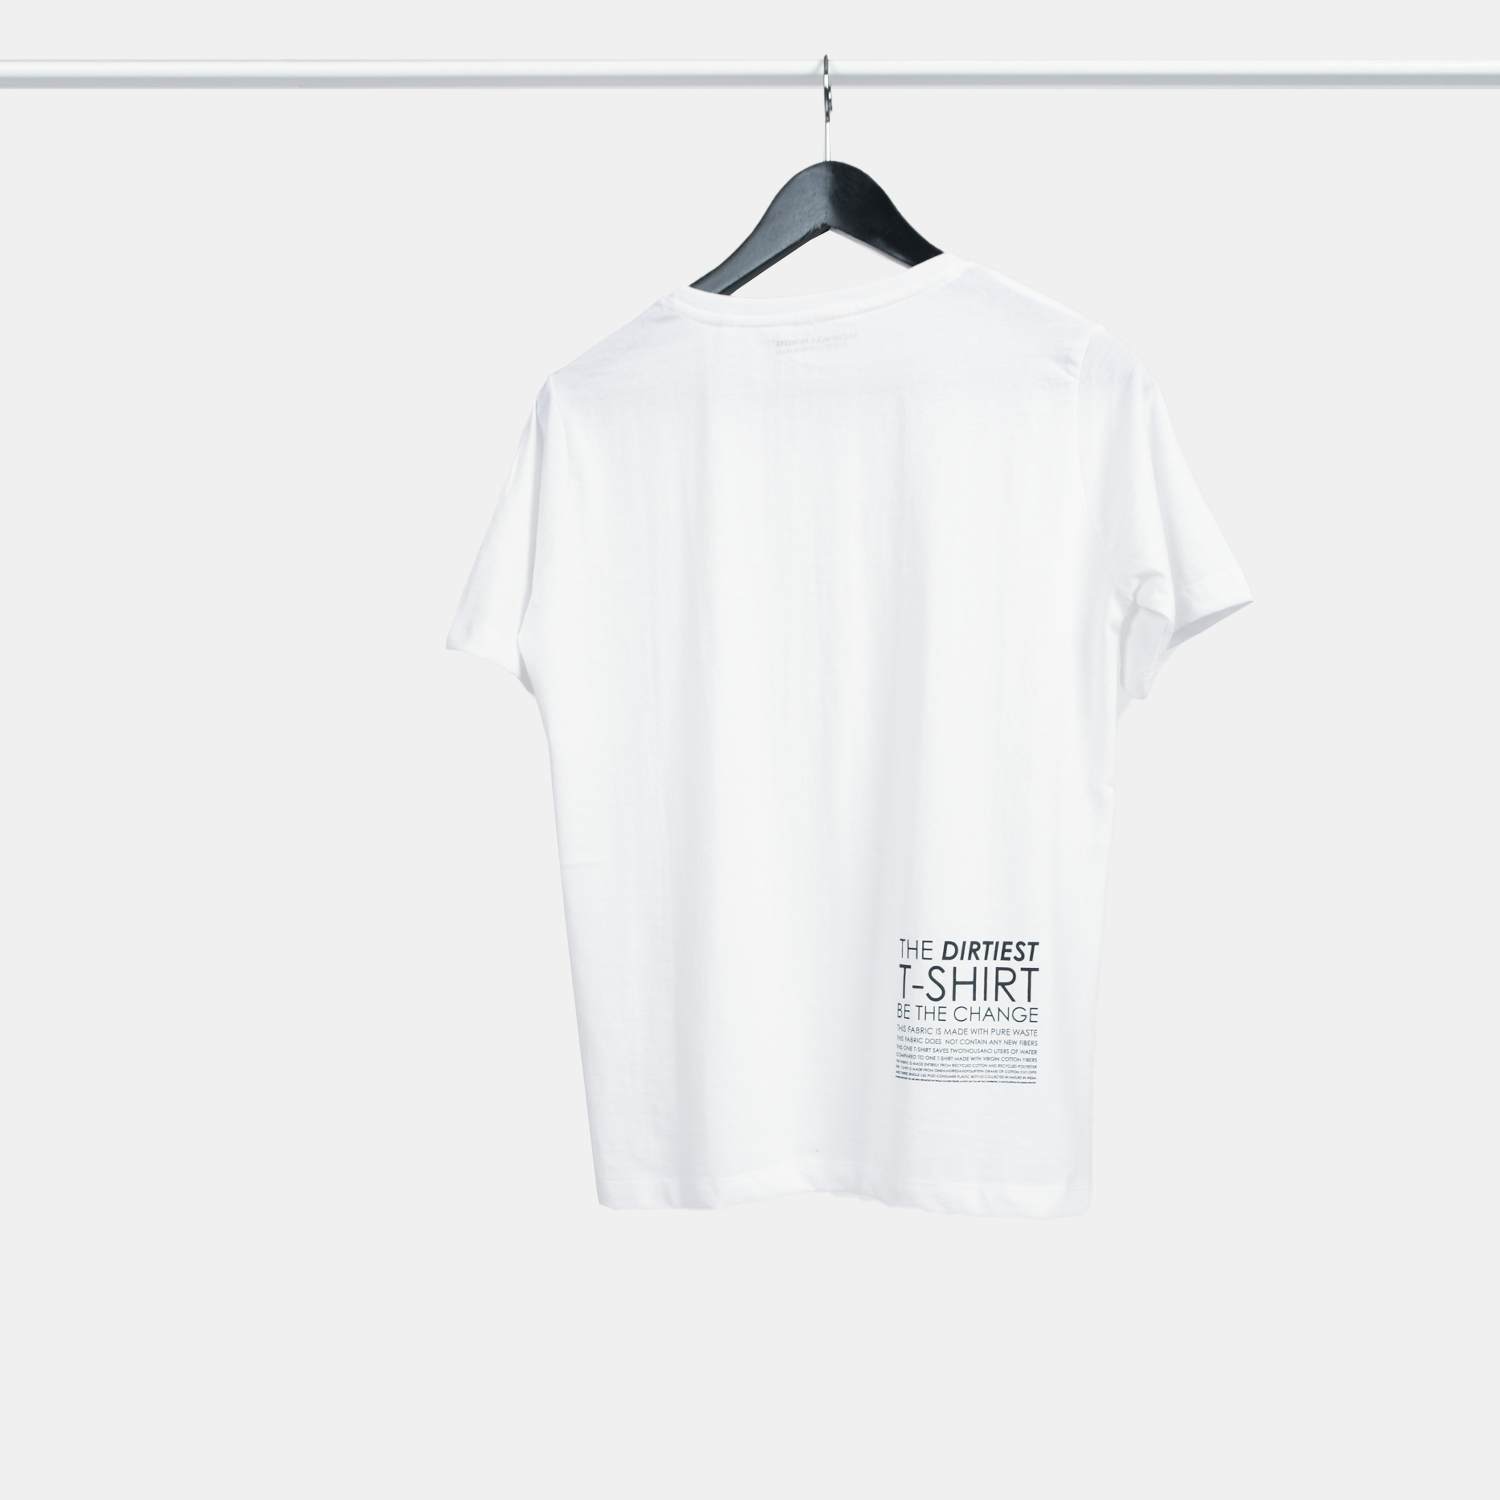 Genanvendt T-shirt i hvid til kvinder, bagfra, fra A-PIONEER